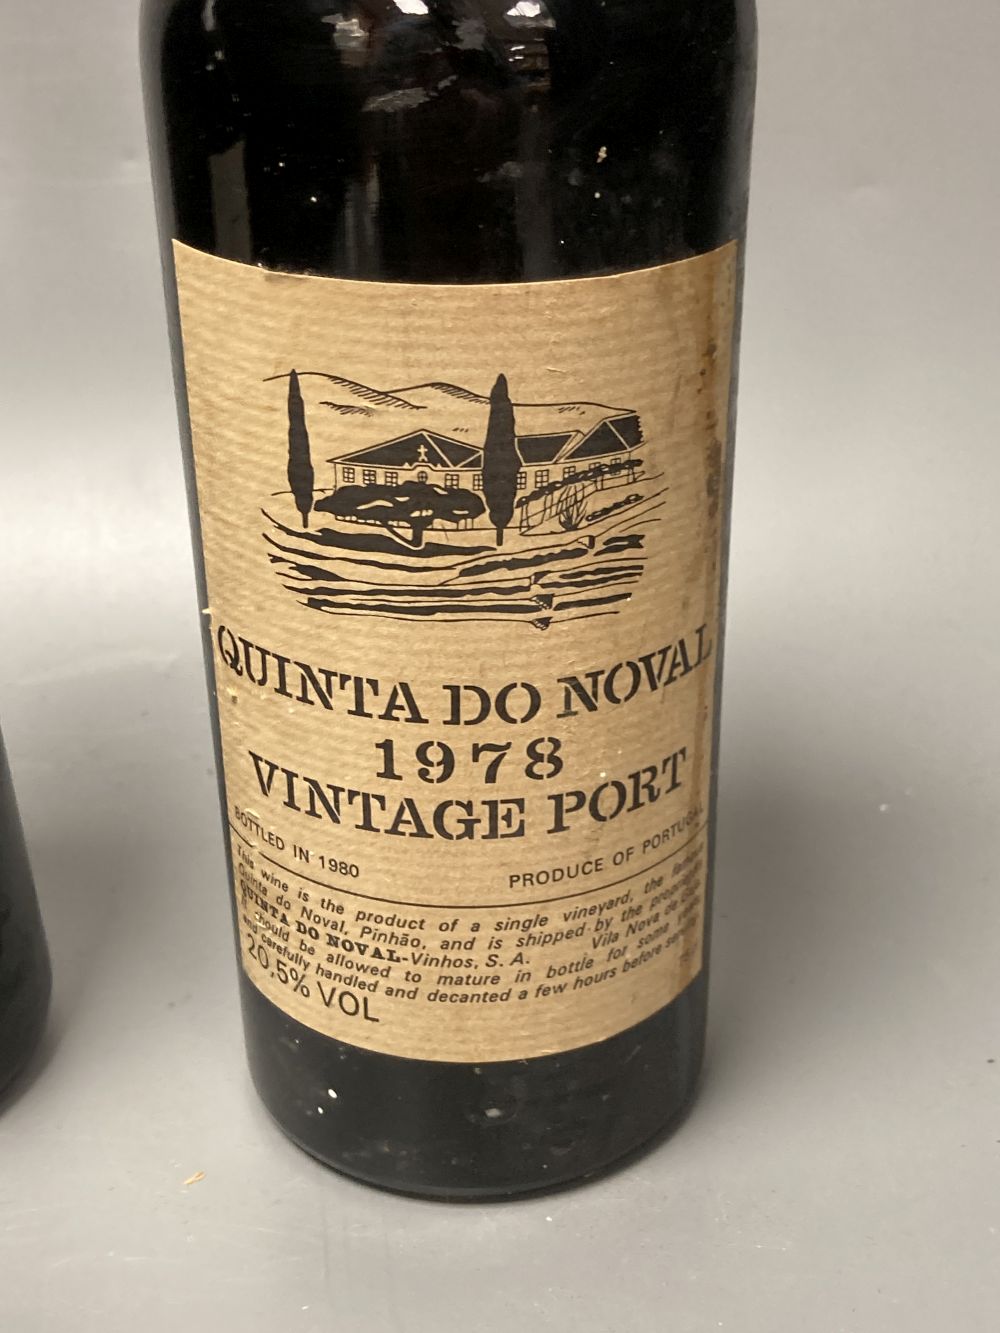 One bottle Warres 1970 vintage Port and one bottle of Quinta Do Noval 1978